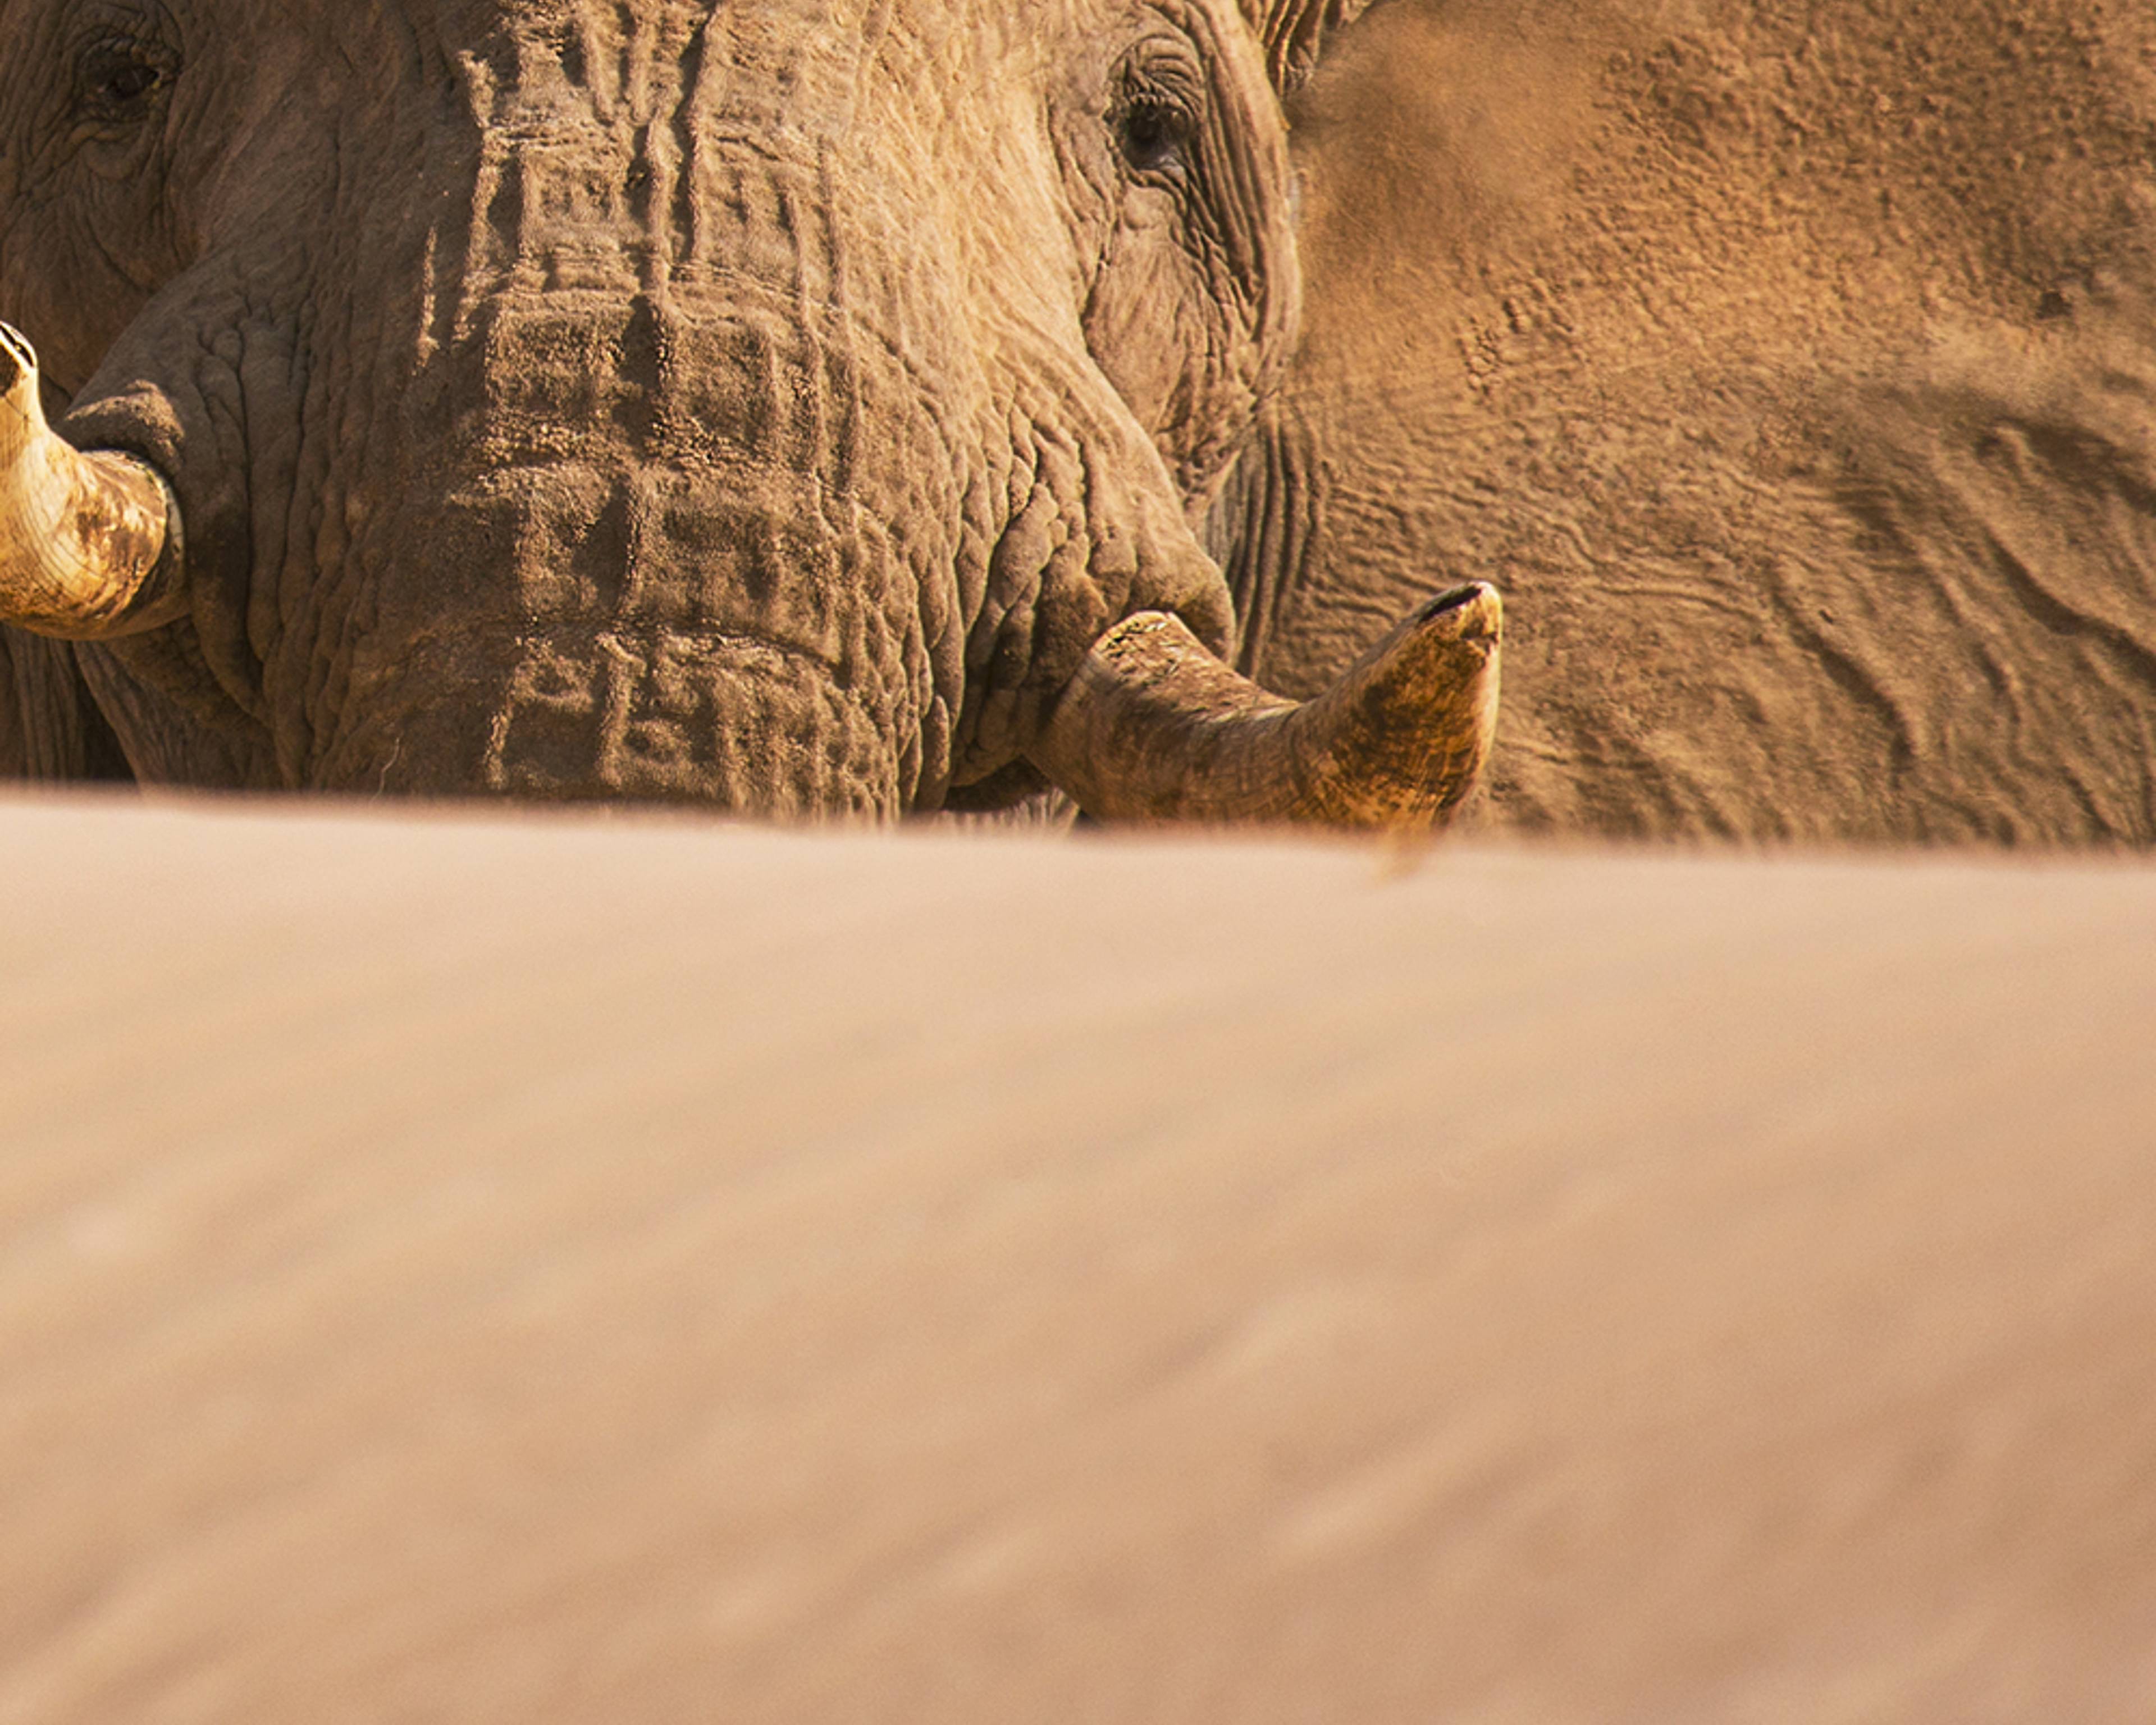 Individuelle Safari Reisen Namibia - Reise jetzt individuell gestalten